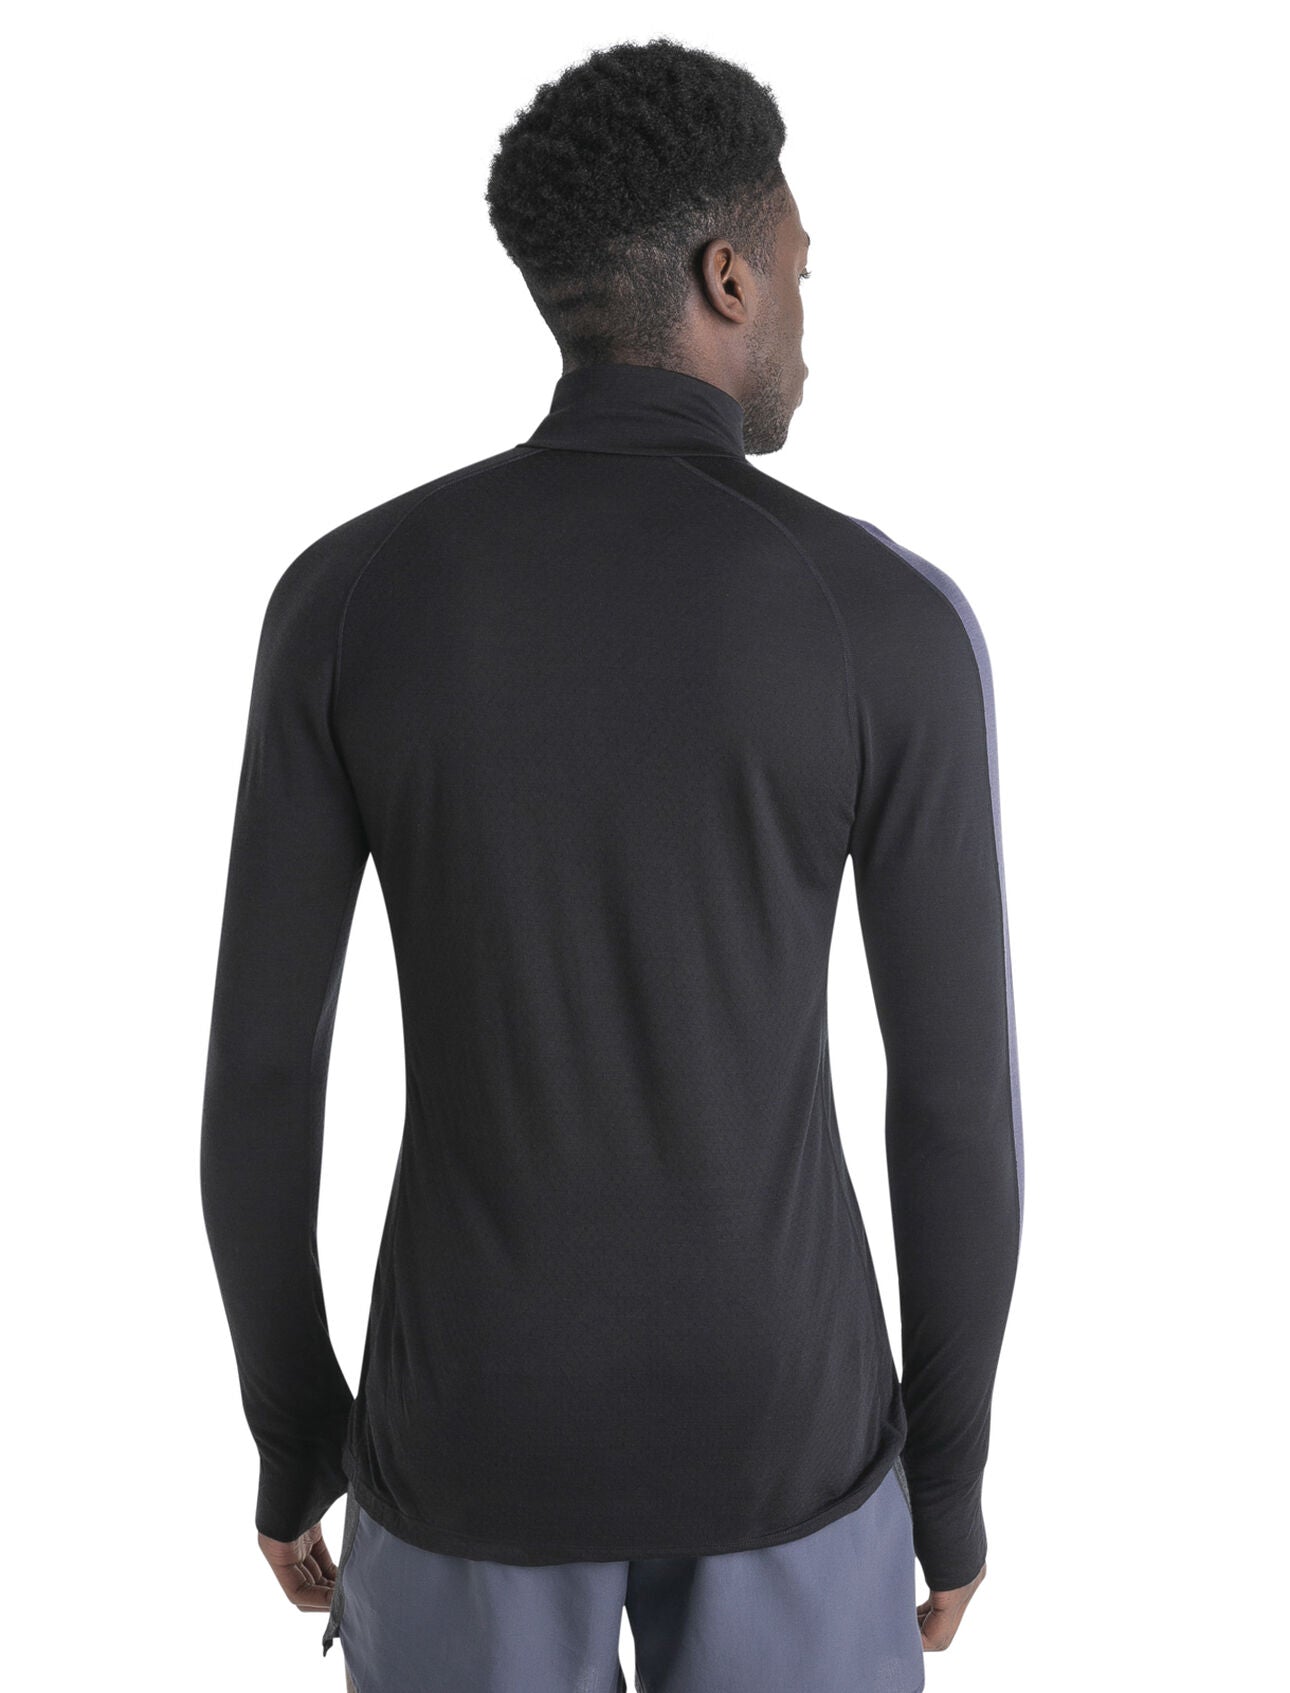 Men's 125 ZoneKnit Merino Blend Long Sleeve Half Zip Thermal Top